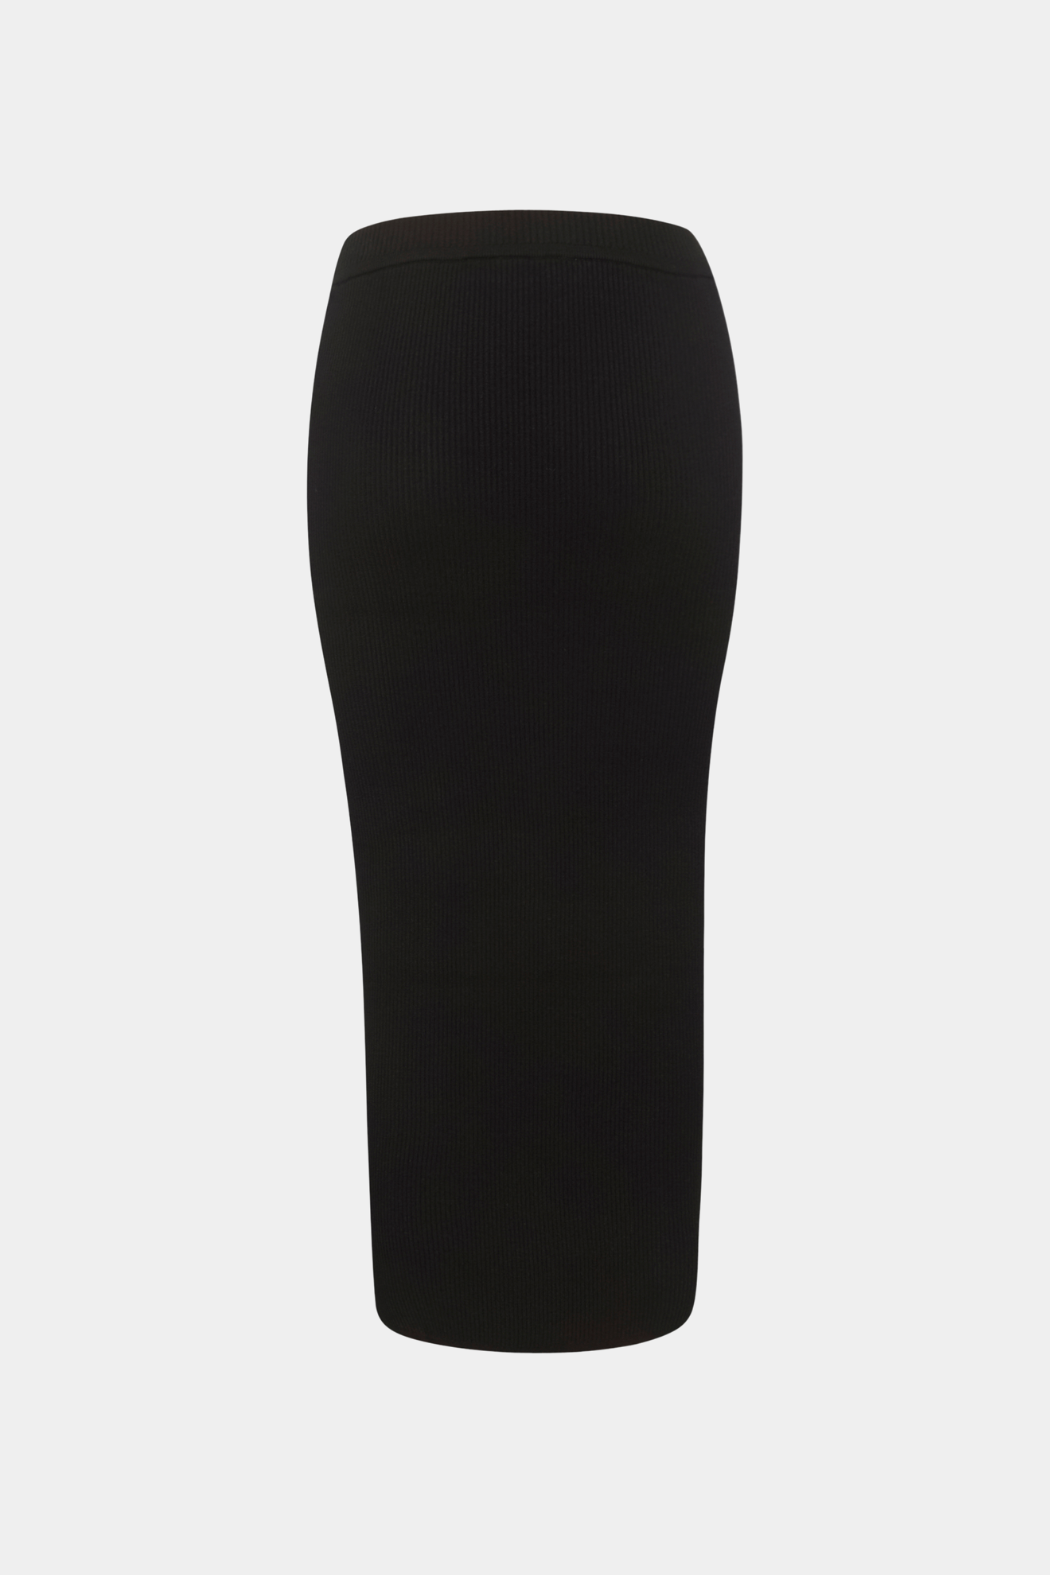 NanjaKB skirt, black